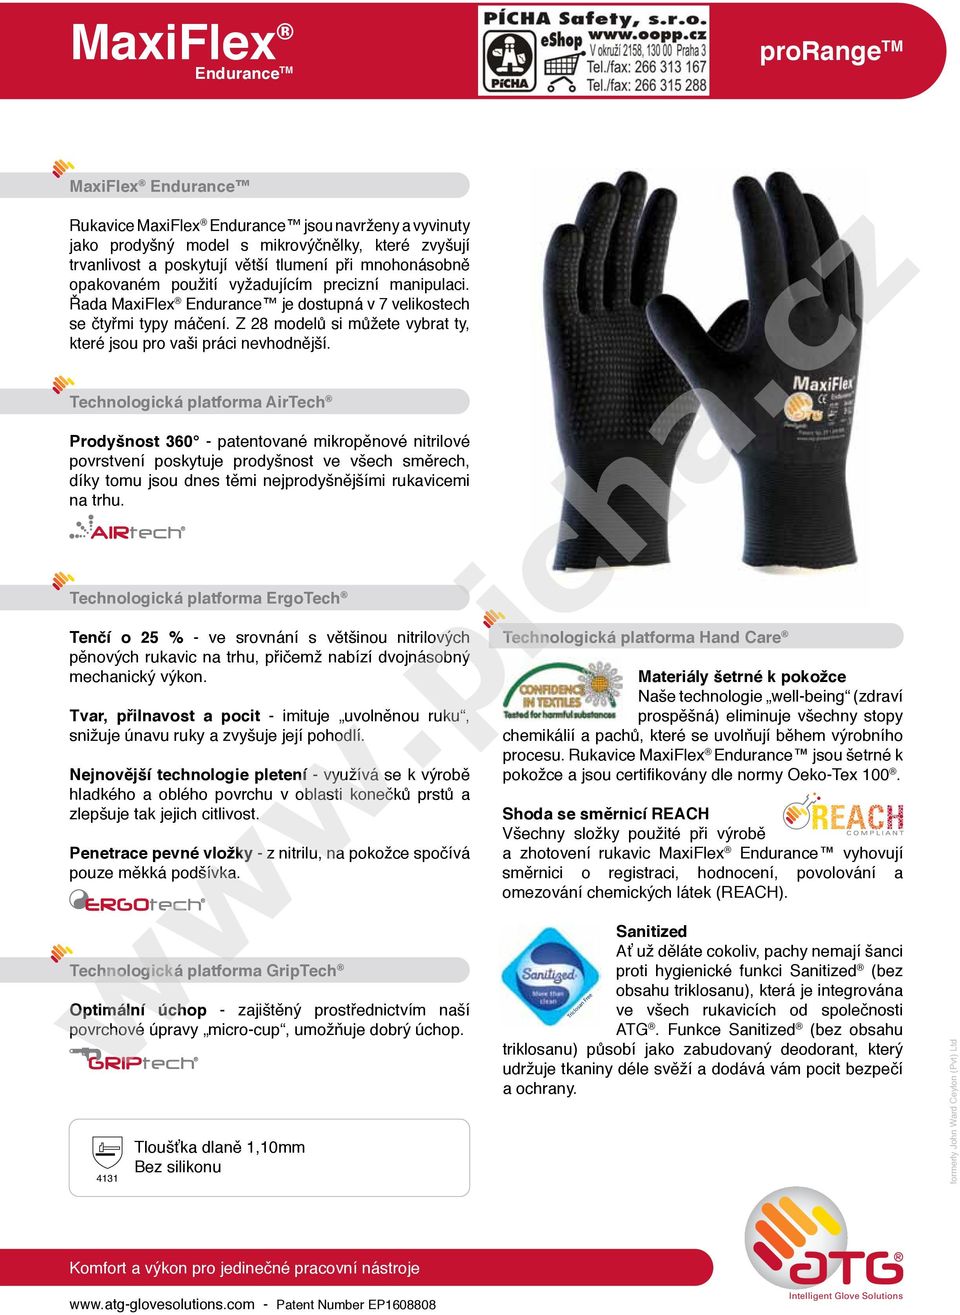 Technologická platforma AirTech Prodyšnost 360 - patentované mikropěnové nitrilové povrstvení poskytuje prodyšnost ve všech směrech, díky tomu jsou dnes těmi nejprodyšnějšími rukavicemi na trhu.